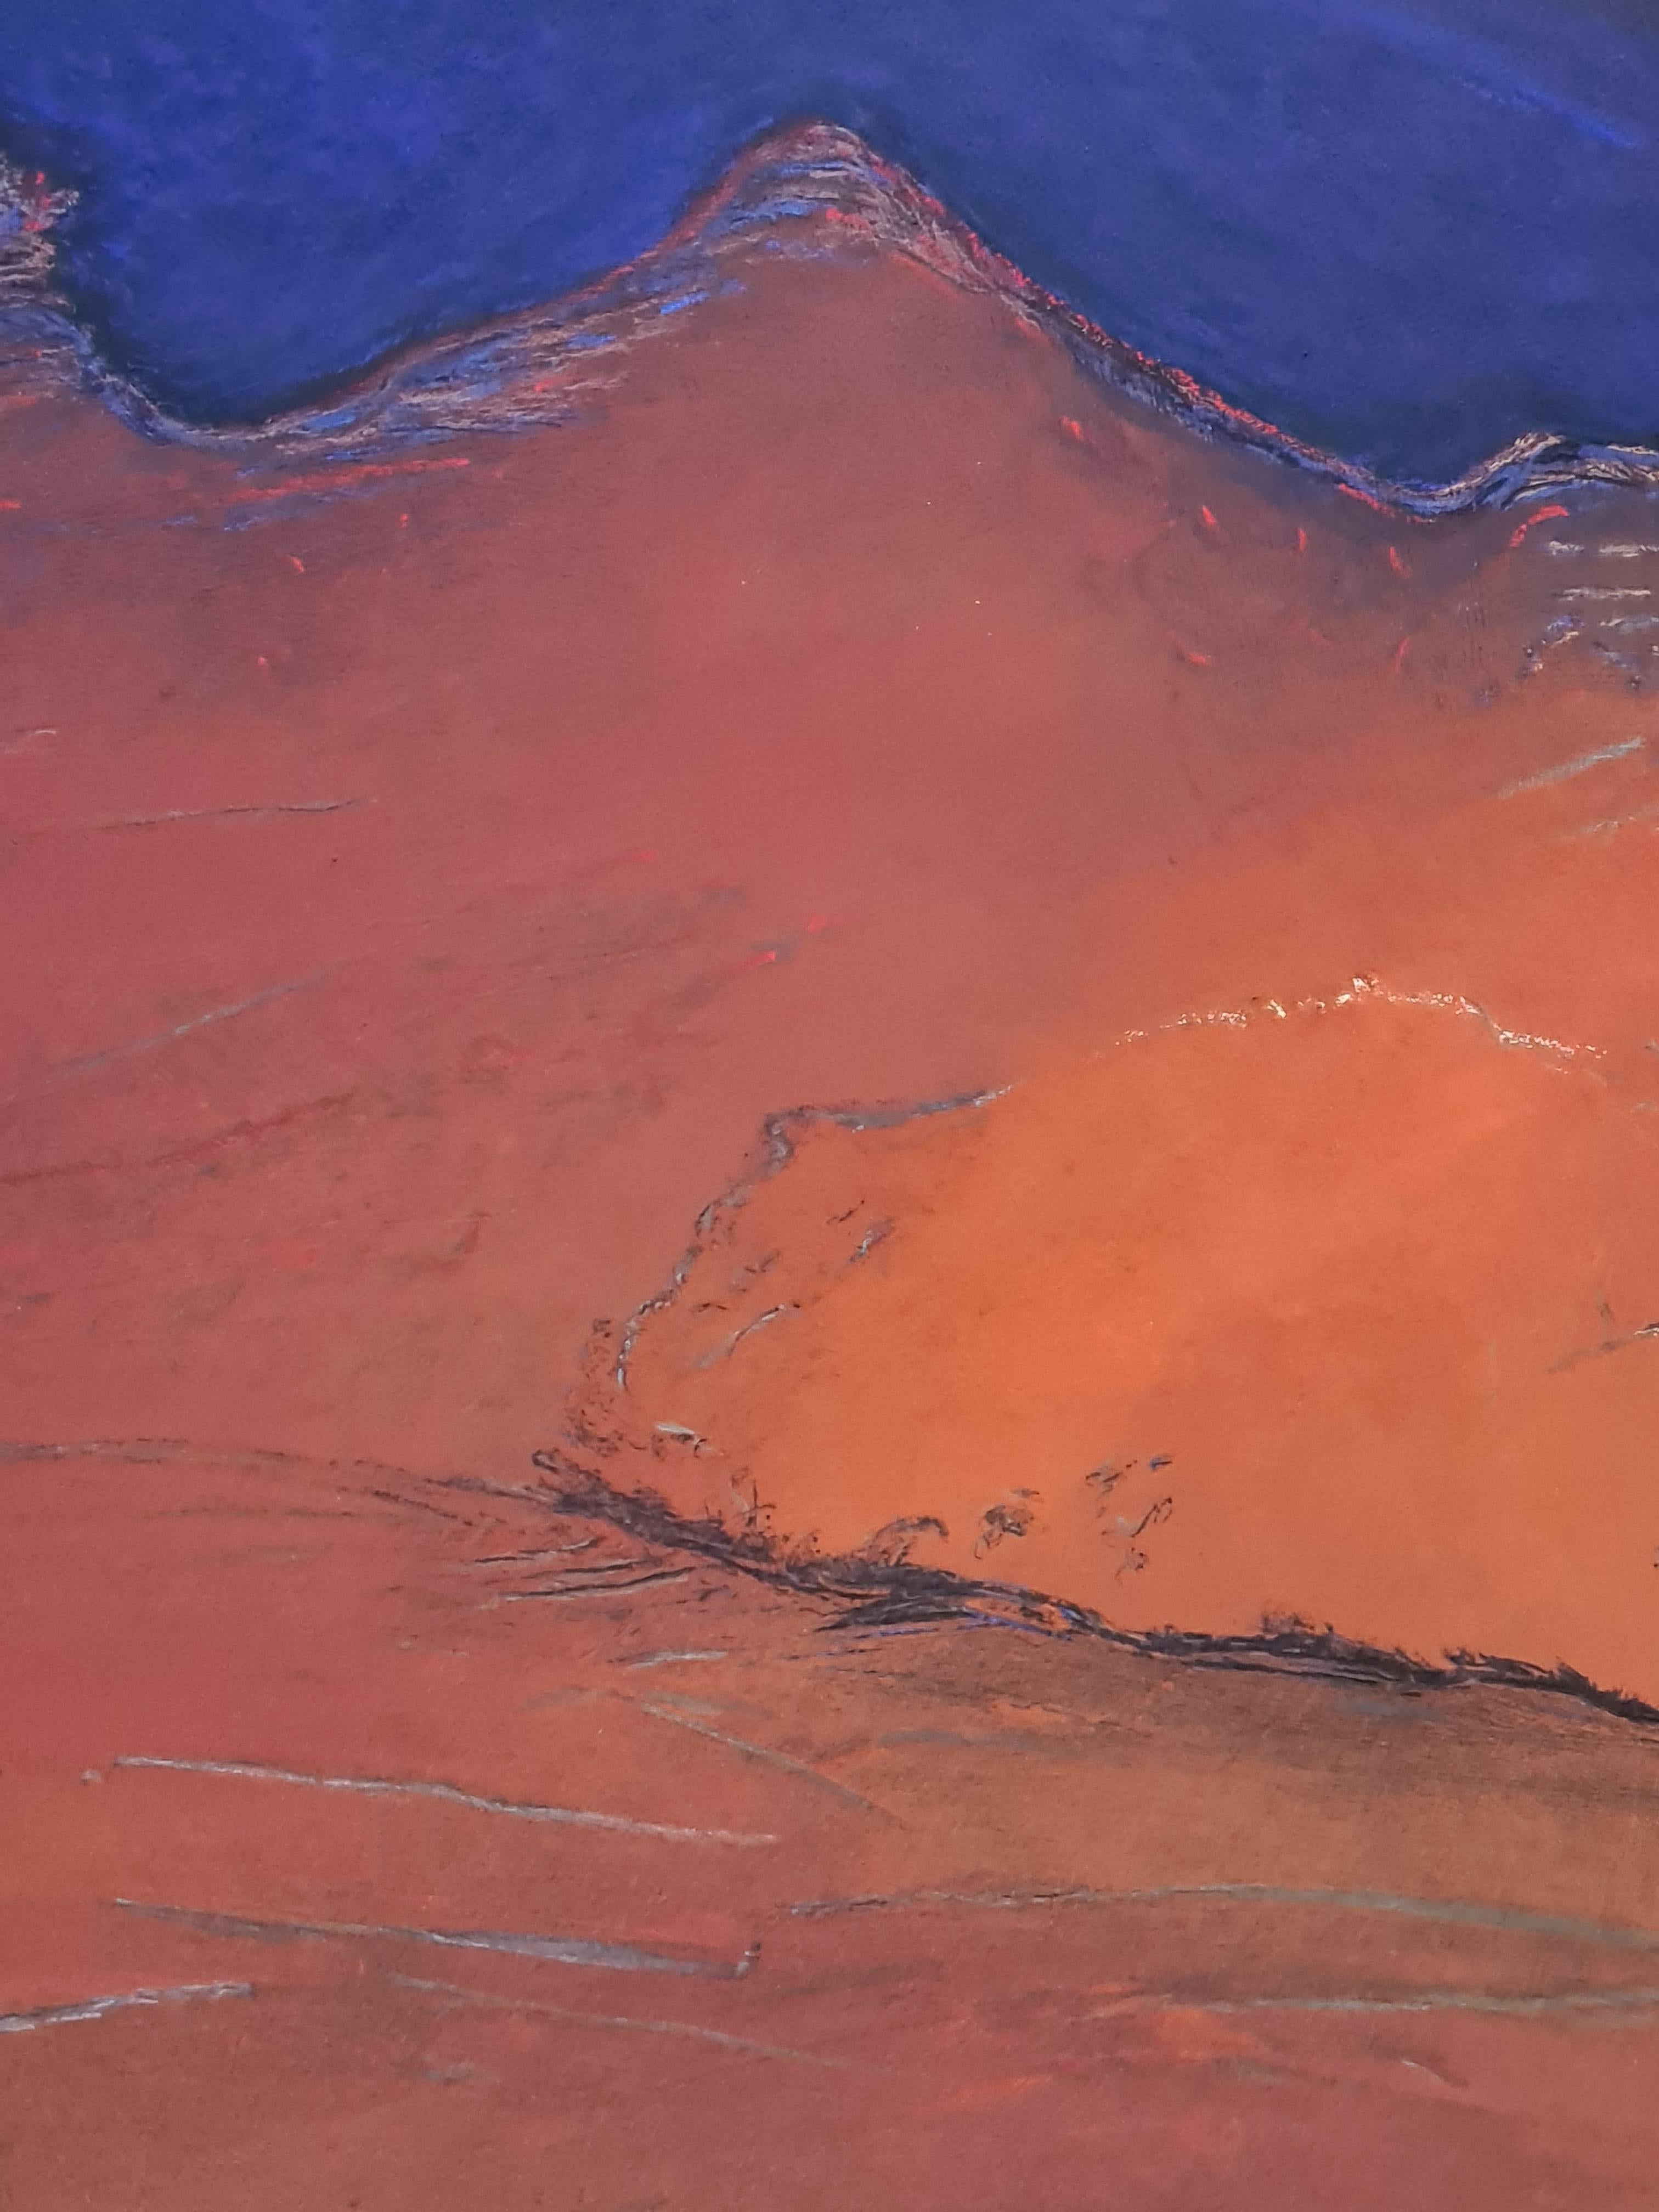 Pastel impressionniste fauve contemporain d'un paysage coloré de l'artiste belge Francis Besson. Signée tout en bas à droite et présentée dans un cadre personnalisé en bois blanc et patiné.

Un magnifique paysage de couleurs rouge, roux, bleu,